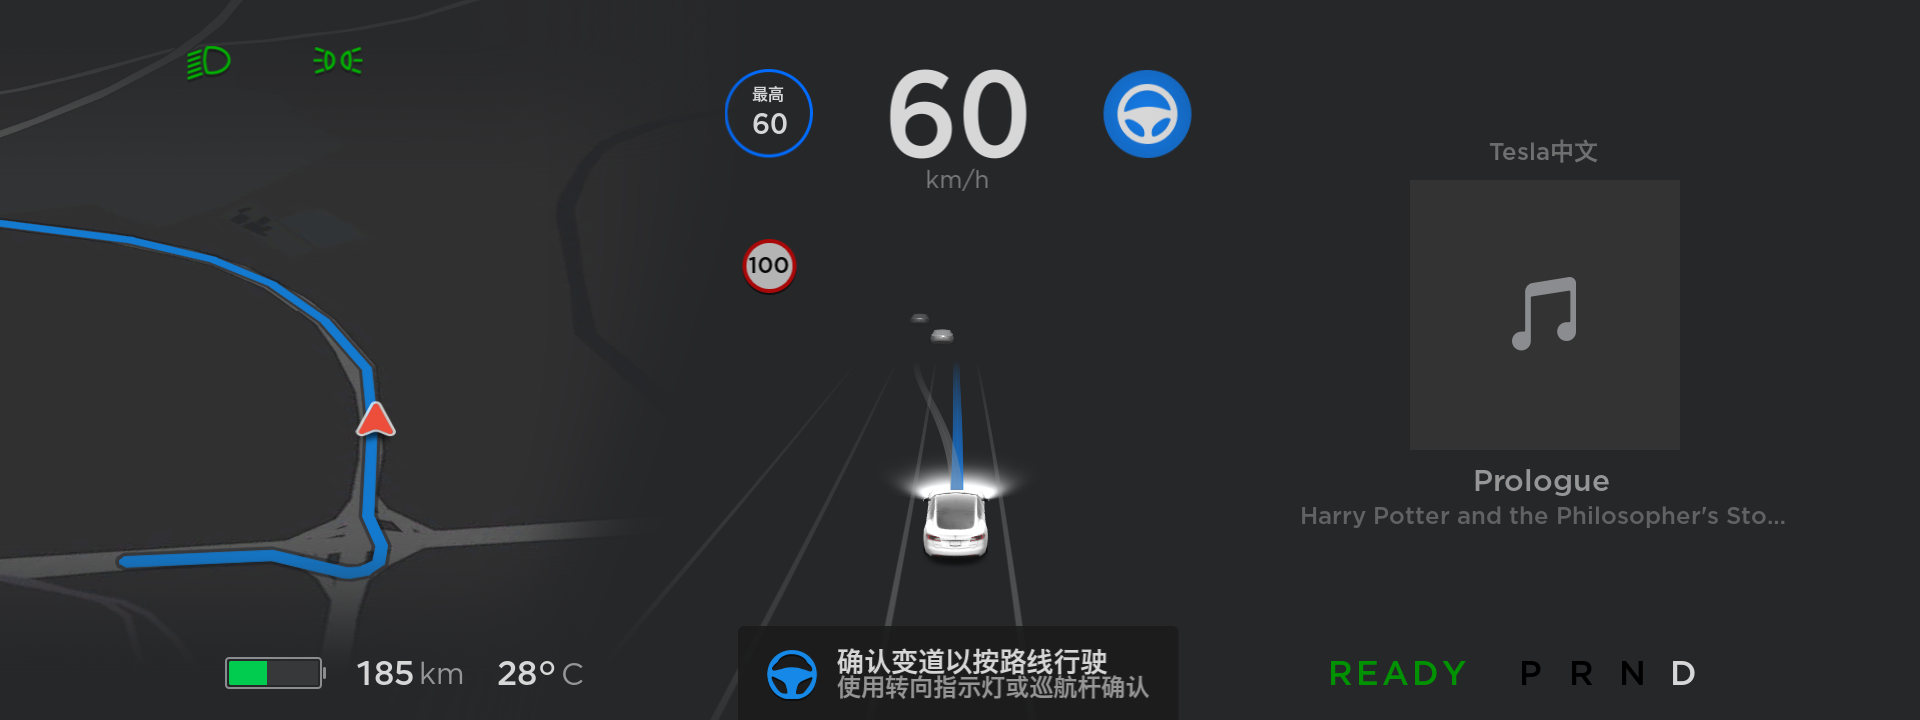 特斯拉在中国推送自动辅助导航驾驶功能